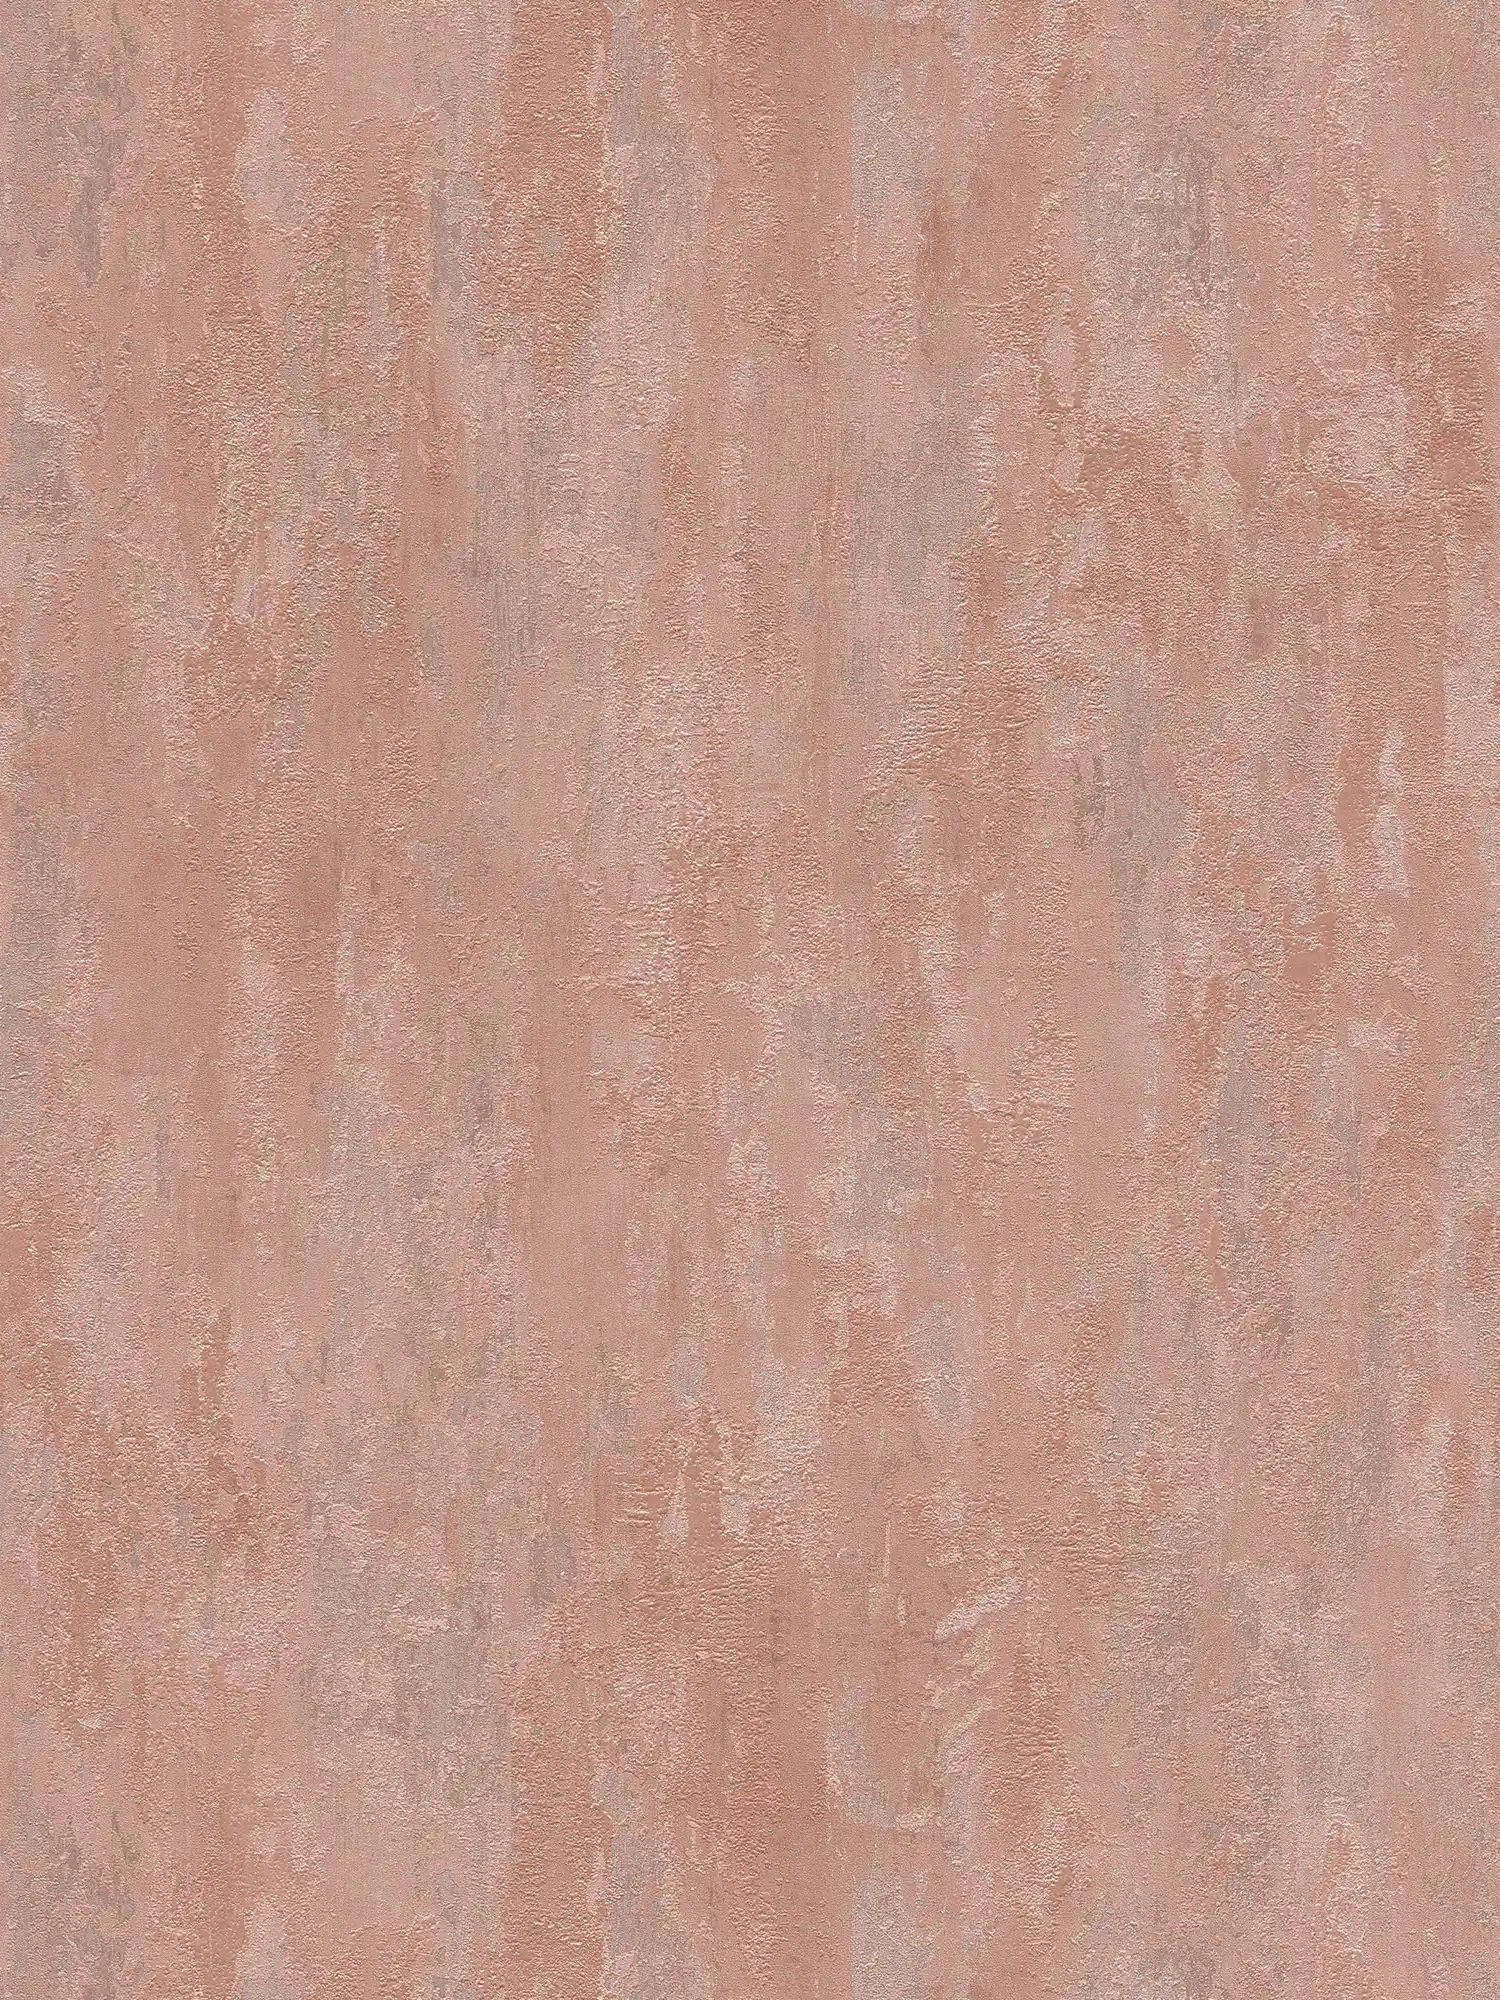         behangpapier industriële stijl met textuureffect - metallic, roze
    